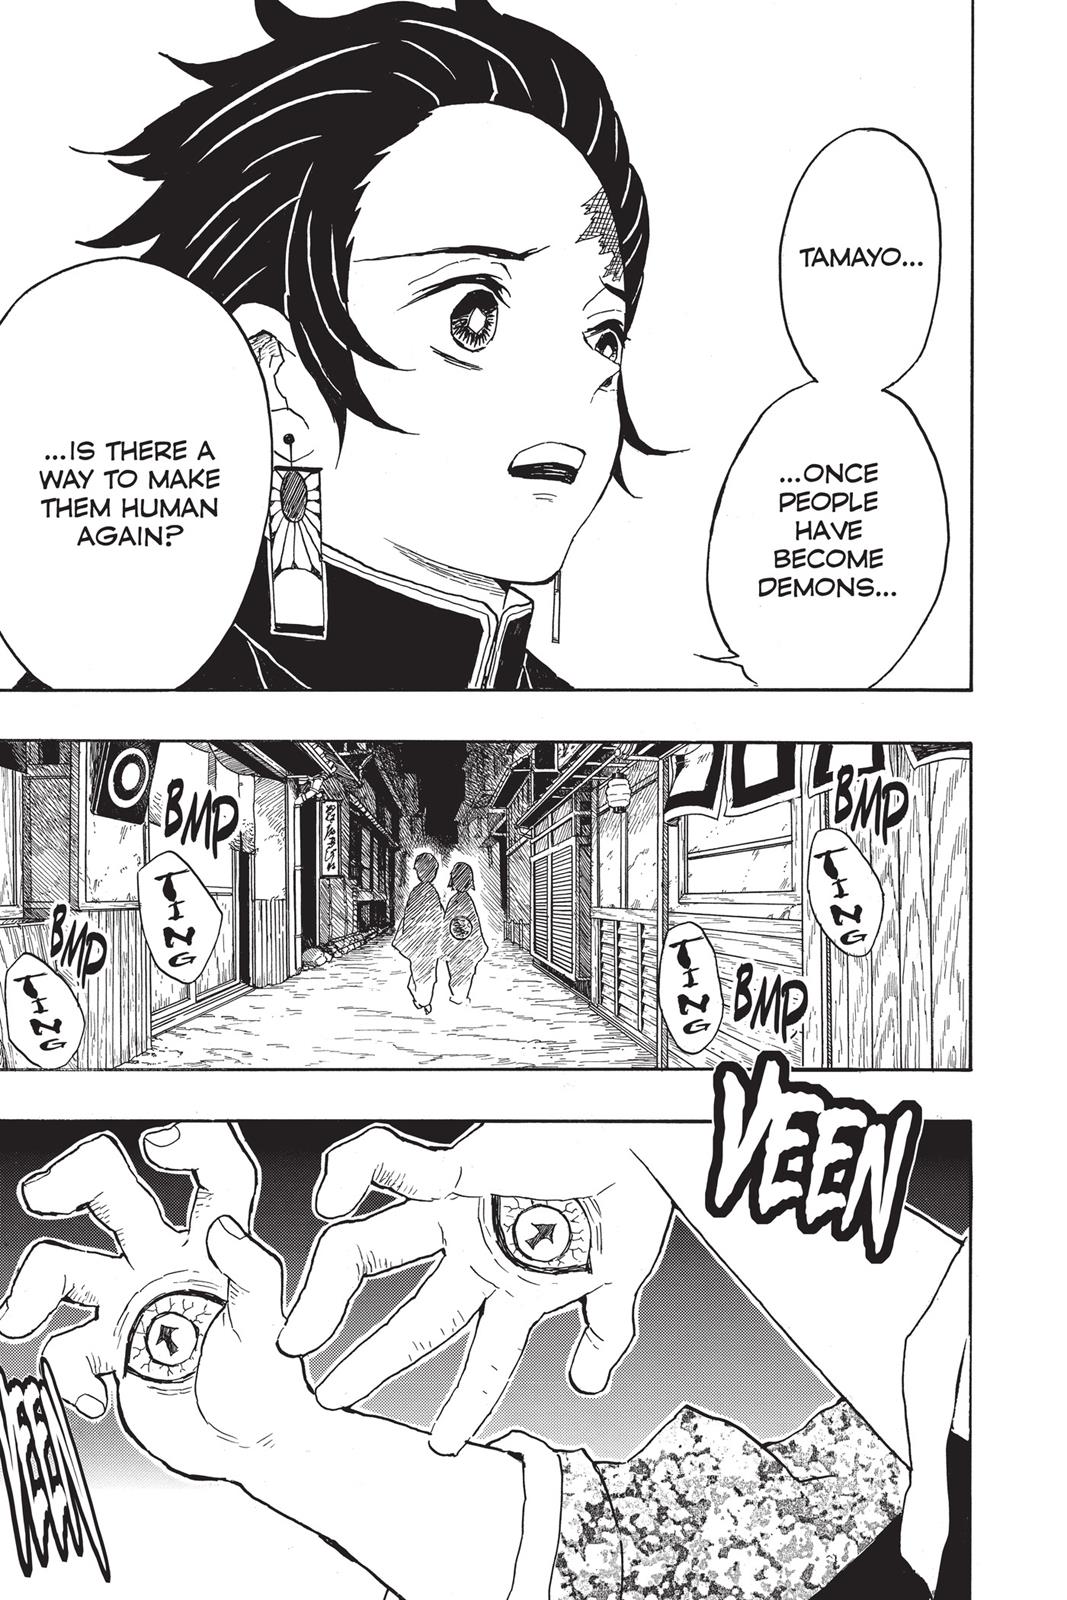 Demon Slayer Manga Manga Chapter - 15 - image 11